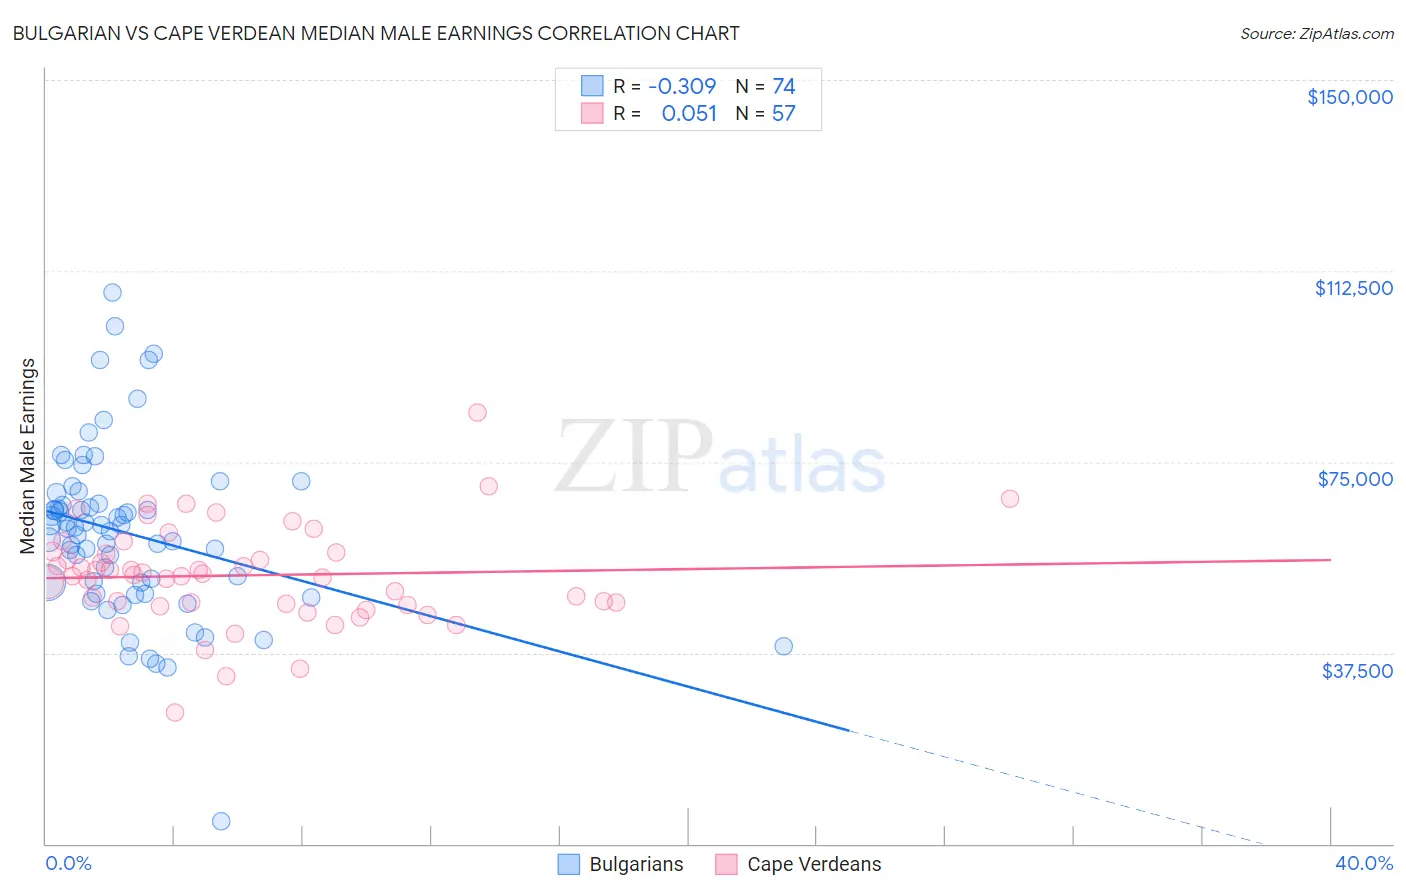 Bulgarian vs Cape Verdean Median Male Earnings